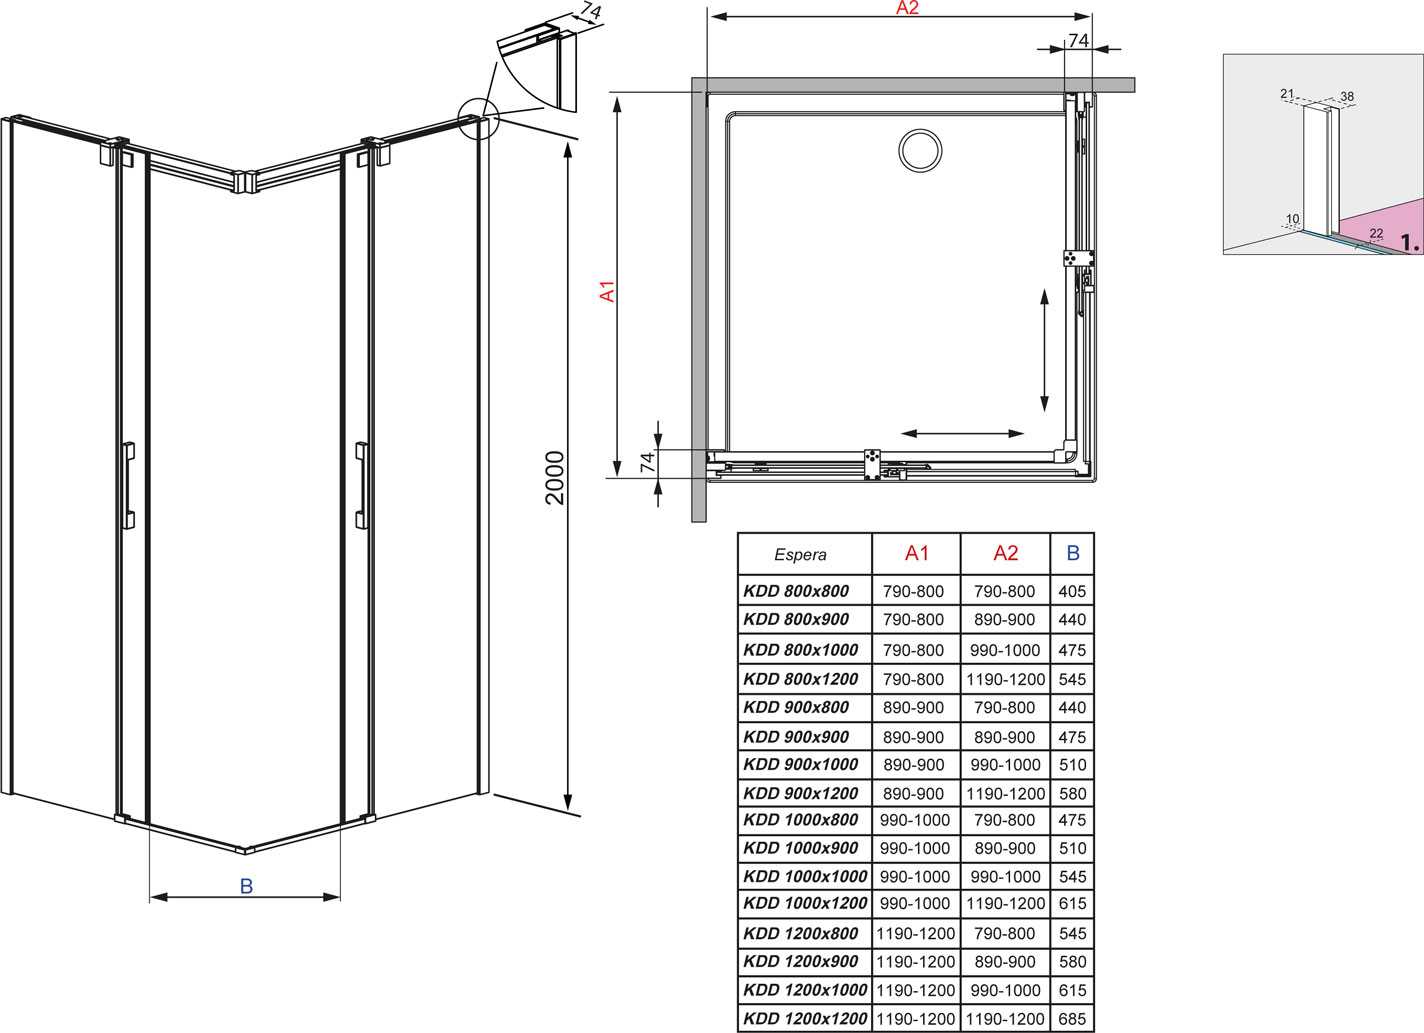 Размеры душевых кабин, как определить удобные размеры именно для вас - самстрой - строительство, дизайн, архитектура